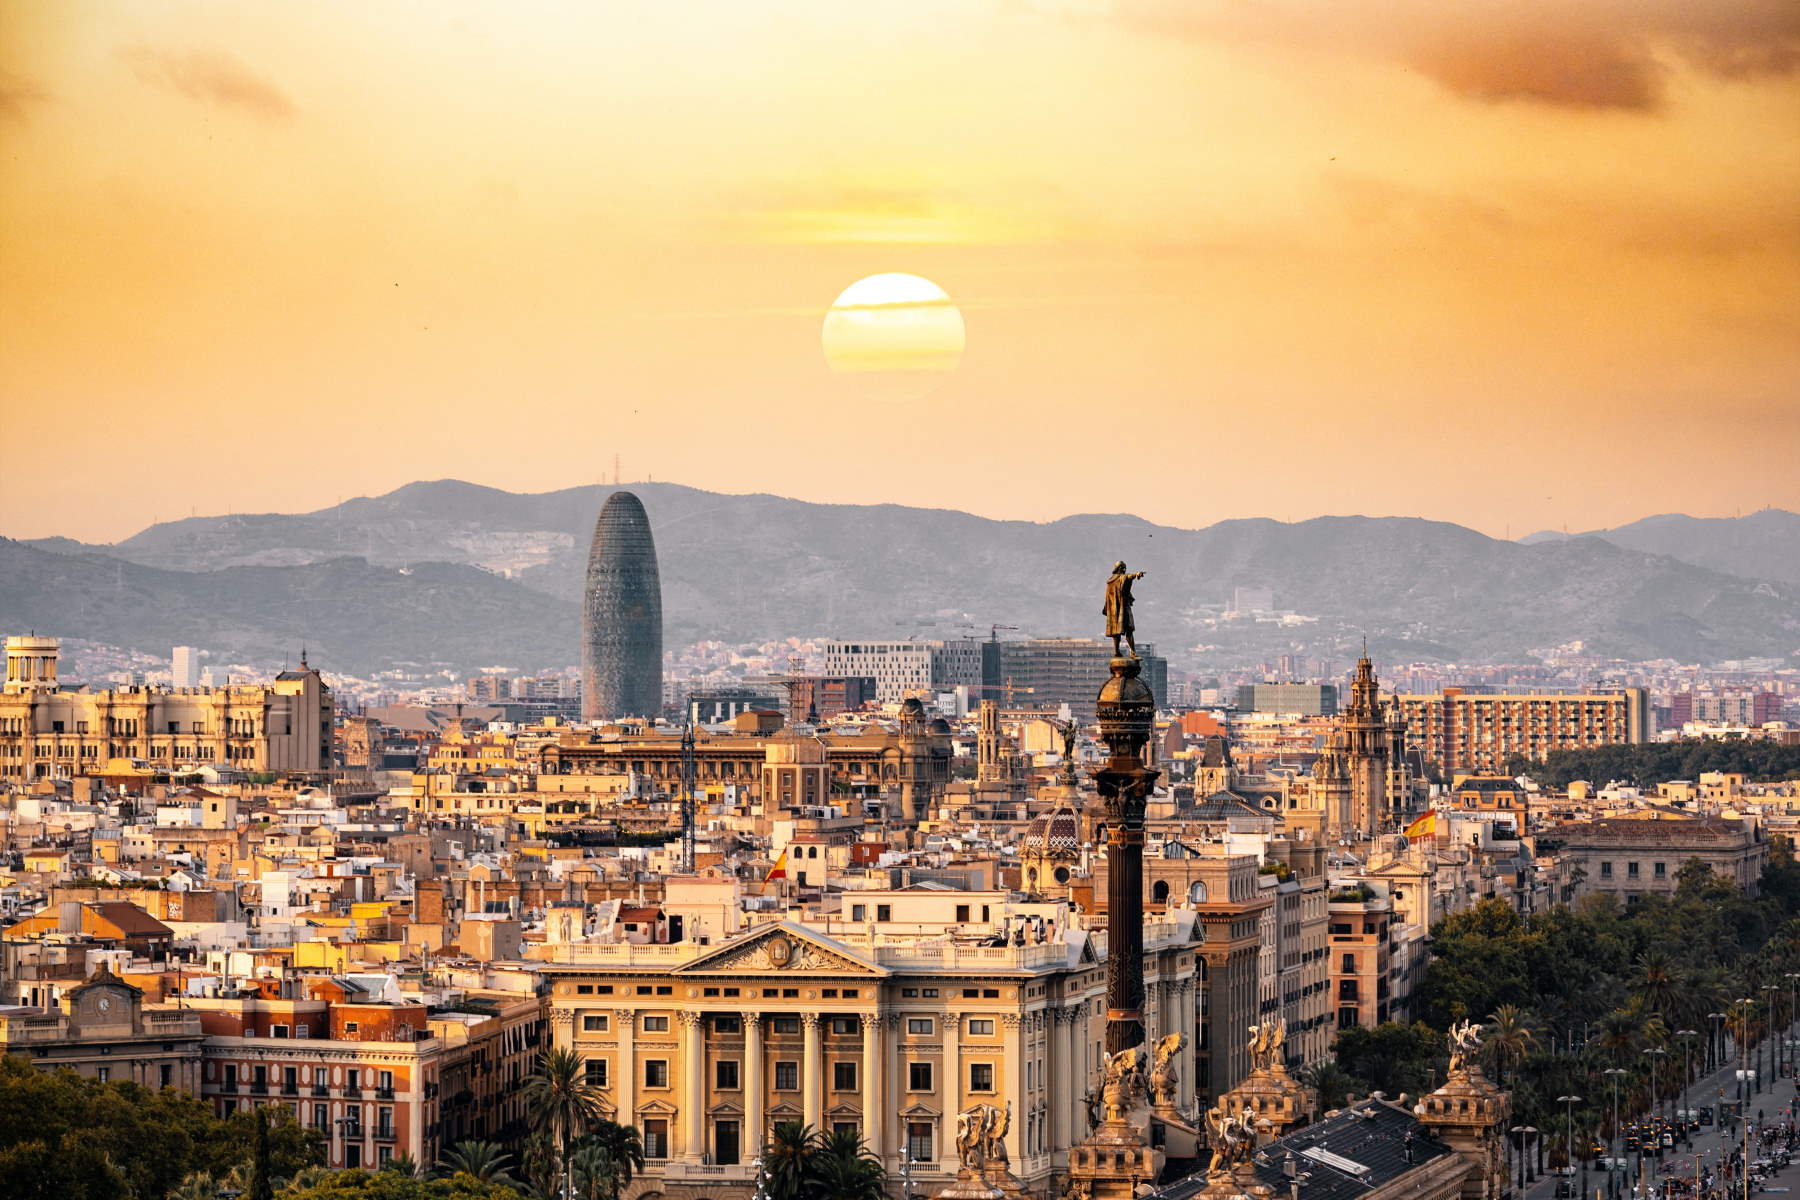 Find Billige Pakkerejser til Barcelona - Rejs Dig Lykkelig